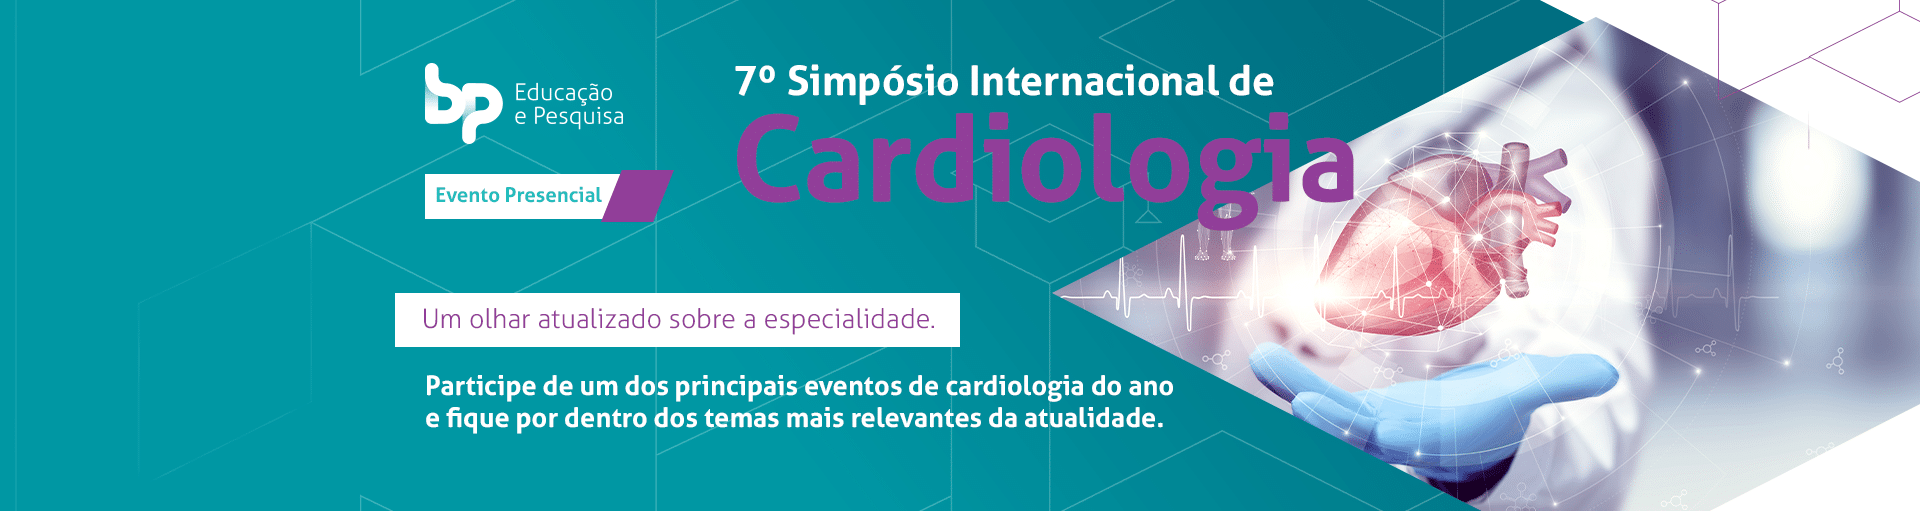 7º Simpósio Internacional de Cardiologia BP Educação e Pesquisa